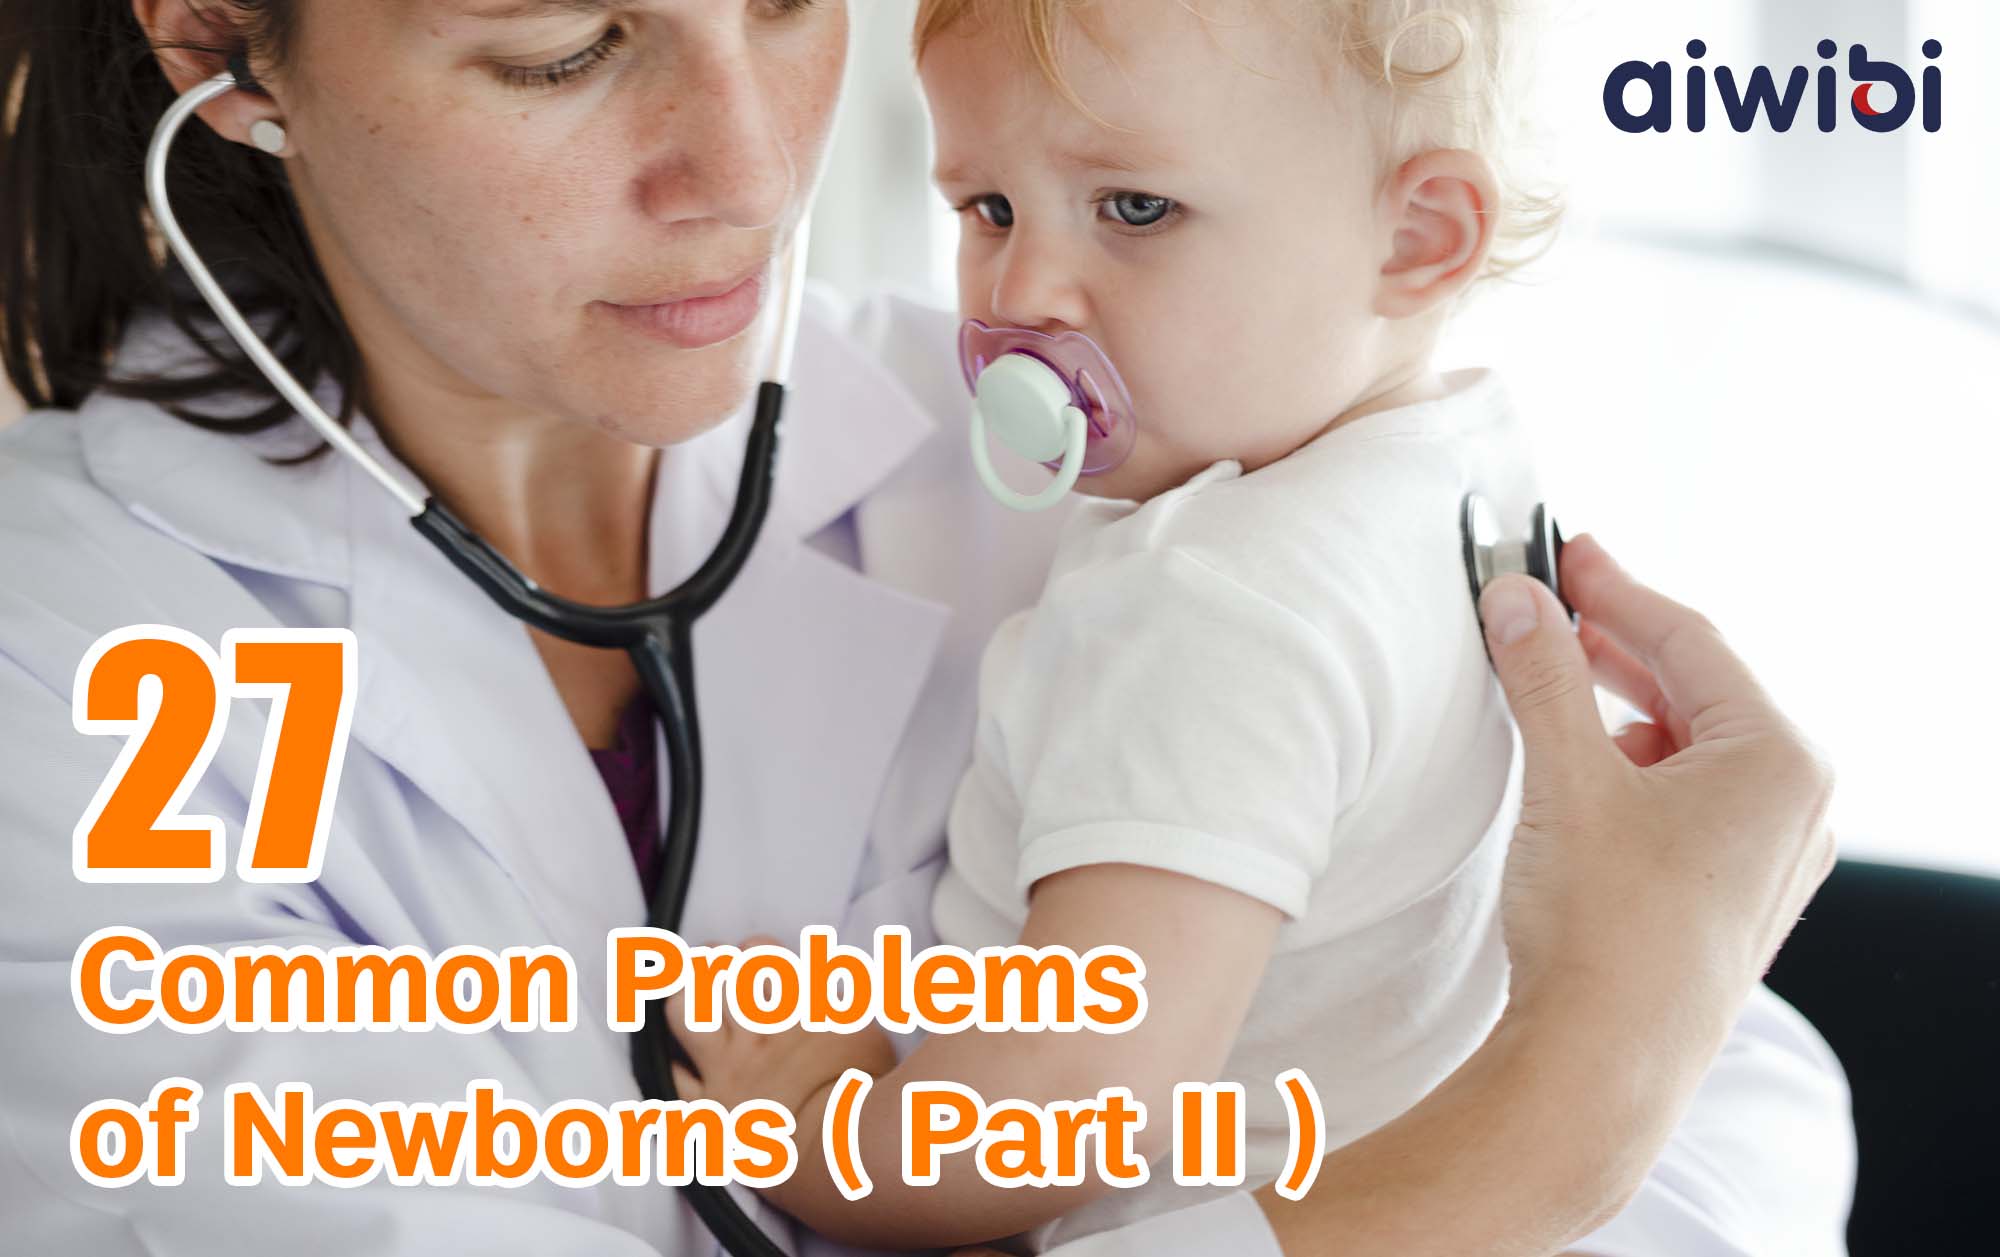 Les parents doivent savoir comment gérer les 27 problèmes courants des nouveau-nés (partie II)